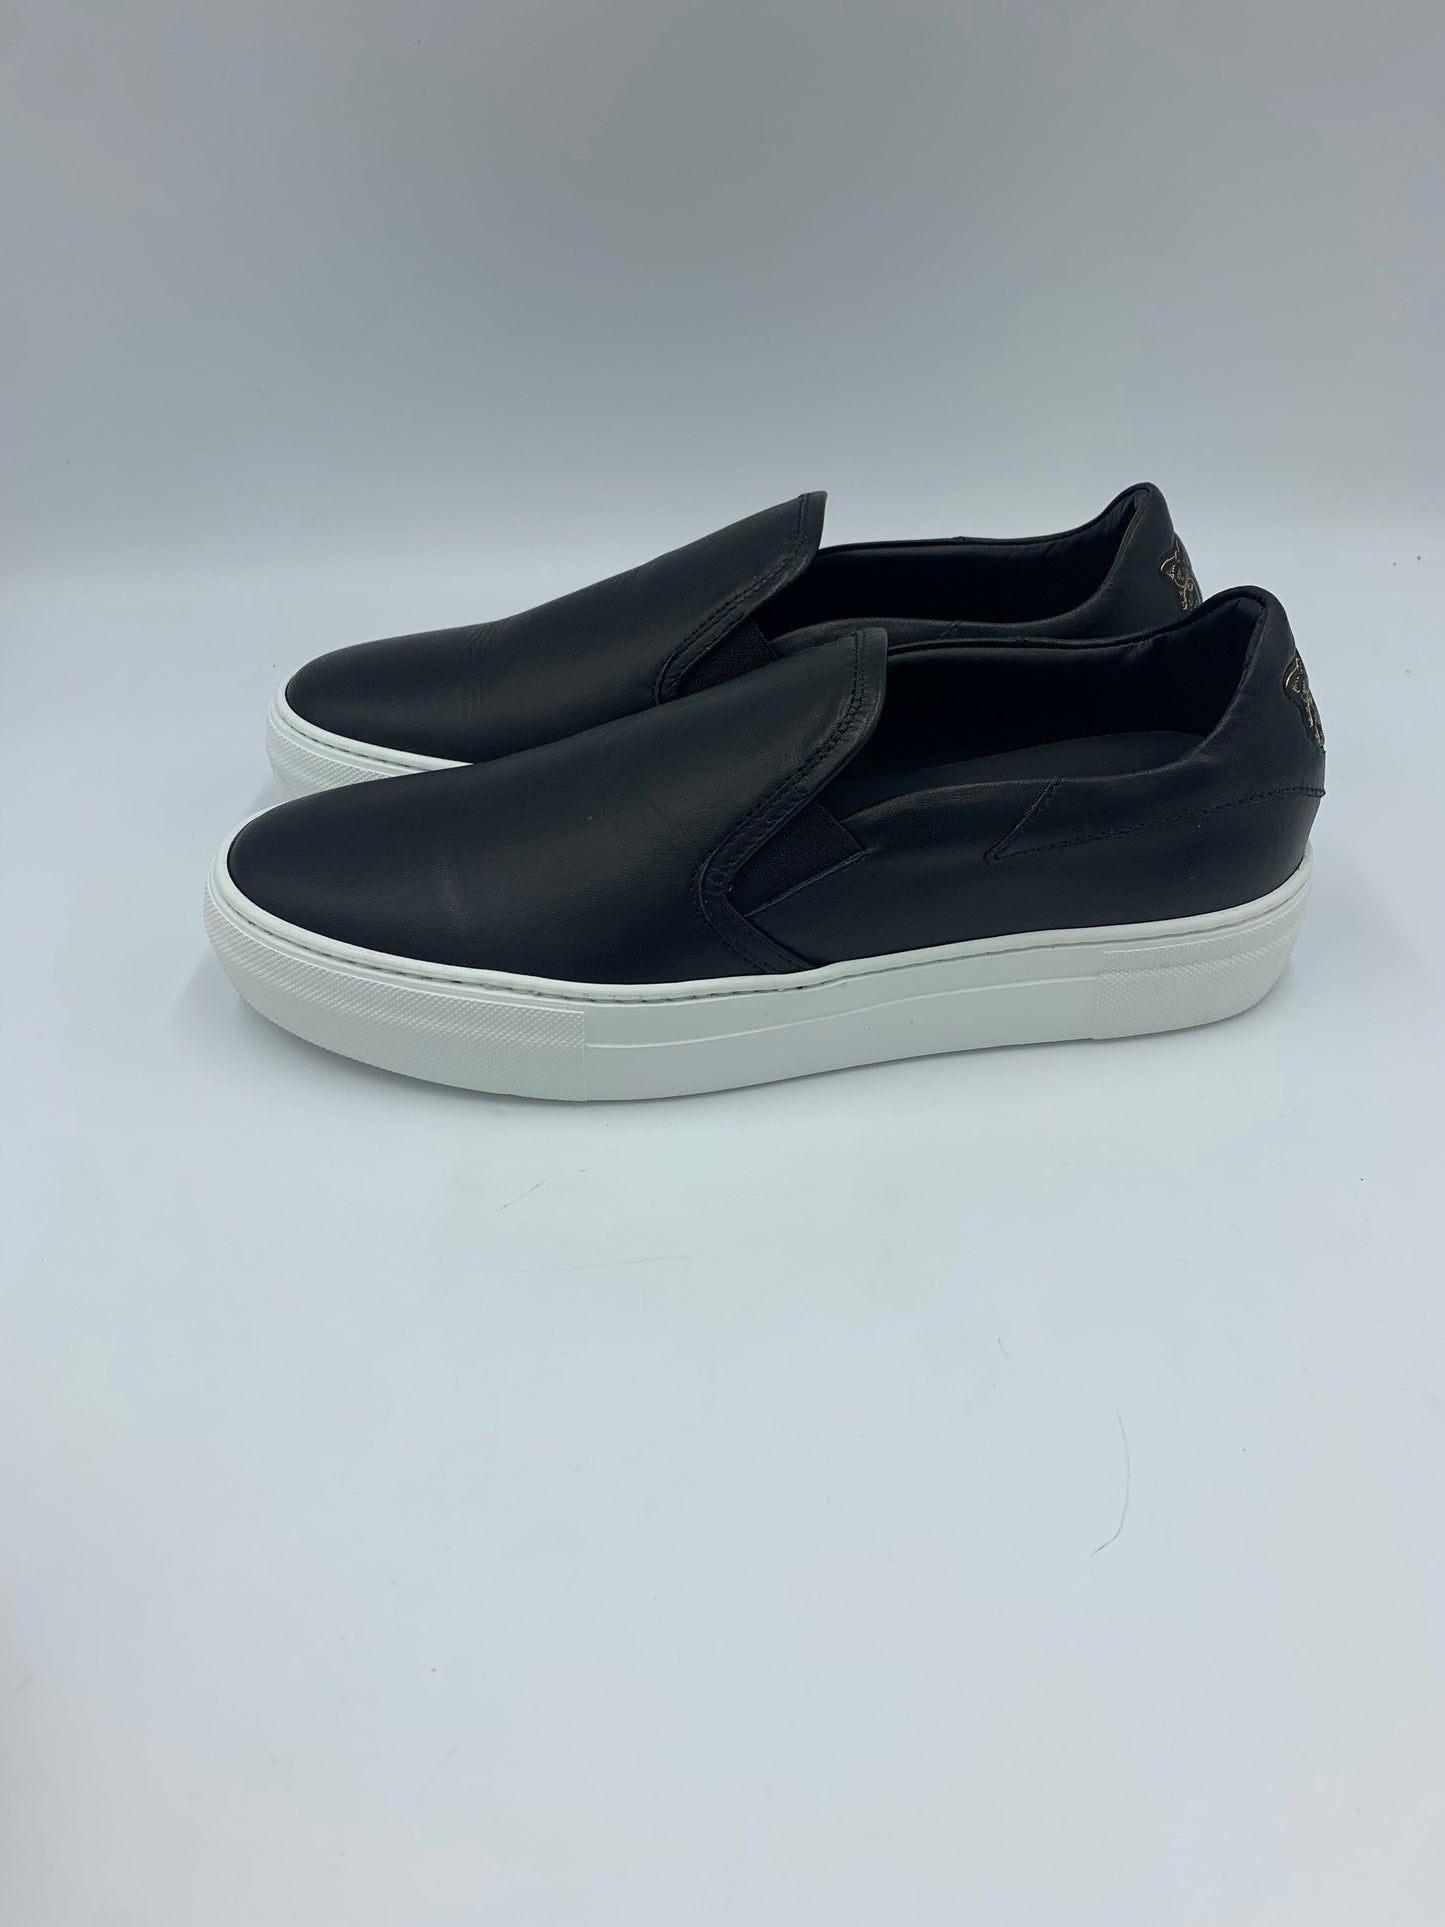 Black Shoes Sneakers LITA by Ciara Size 7.5